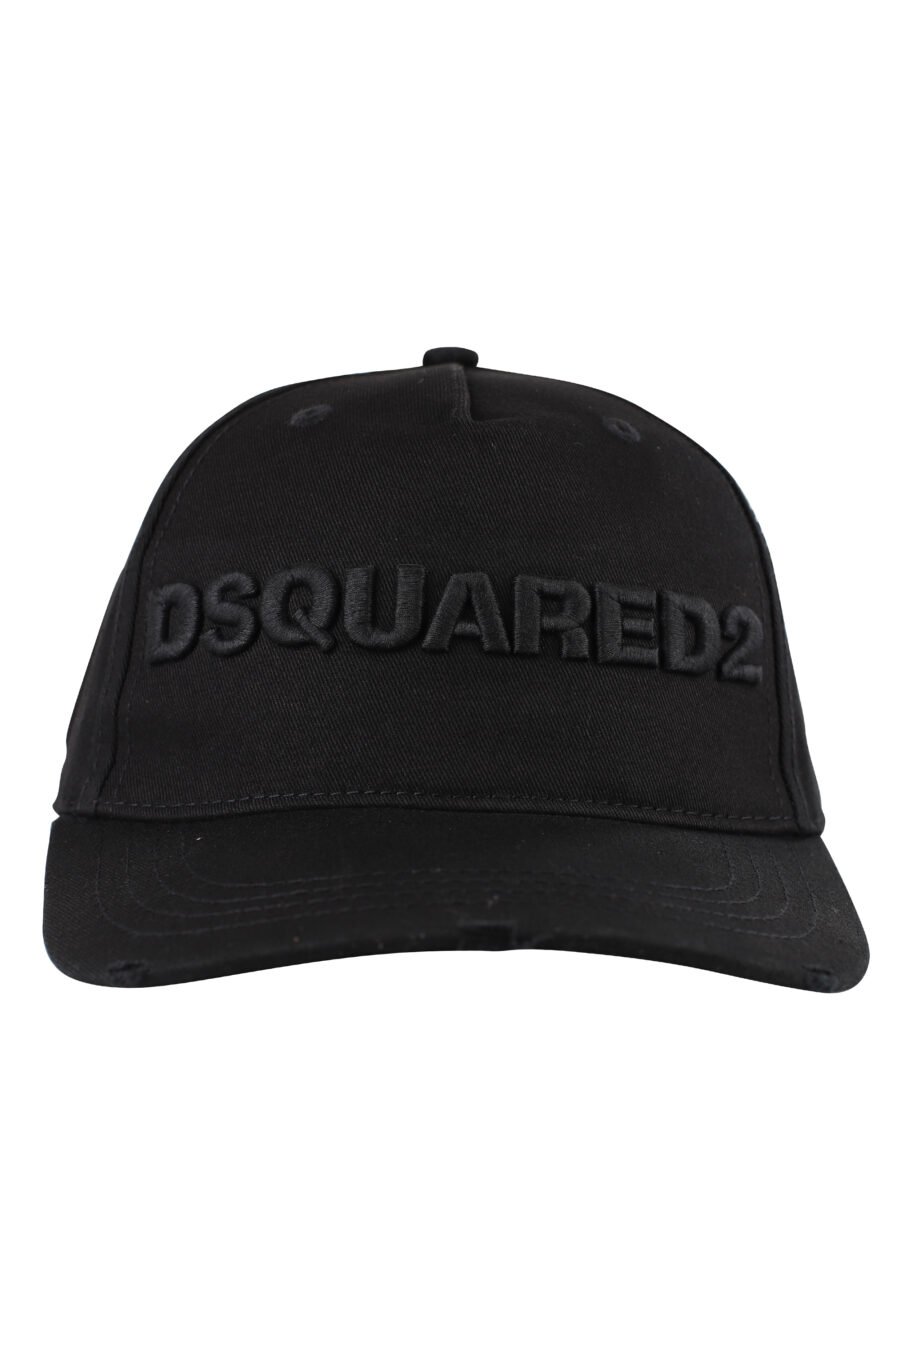 Gorra negra con logo bordado negro - IMG 1244